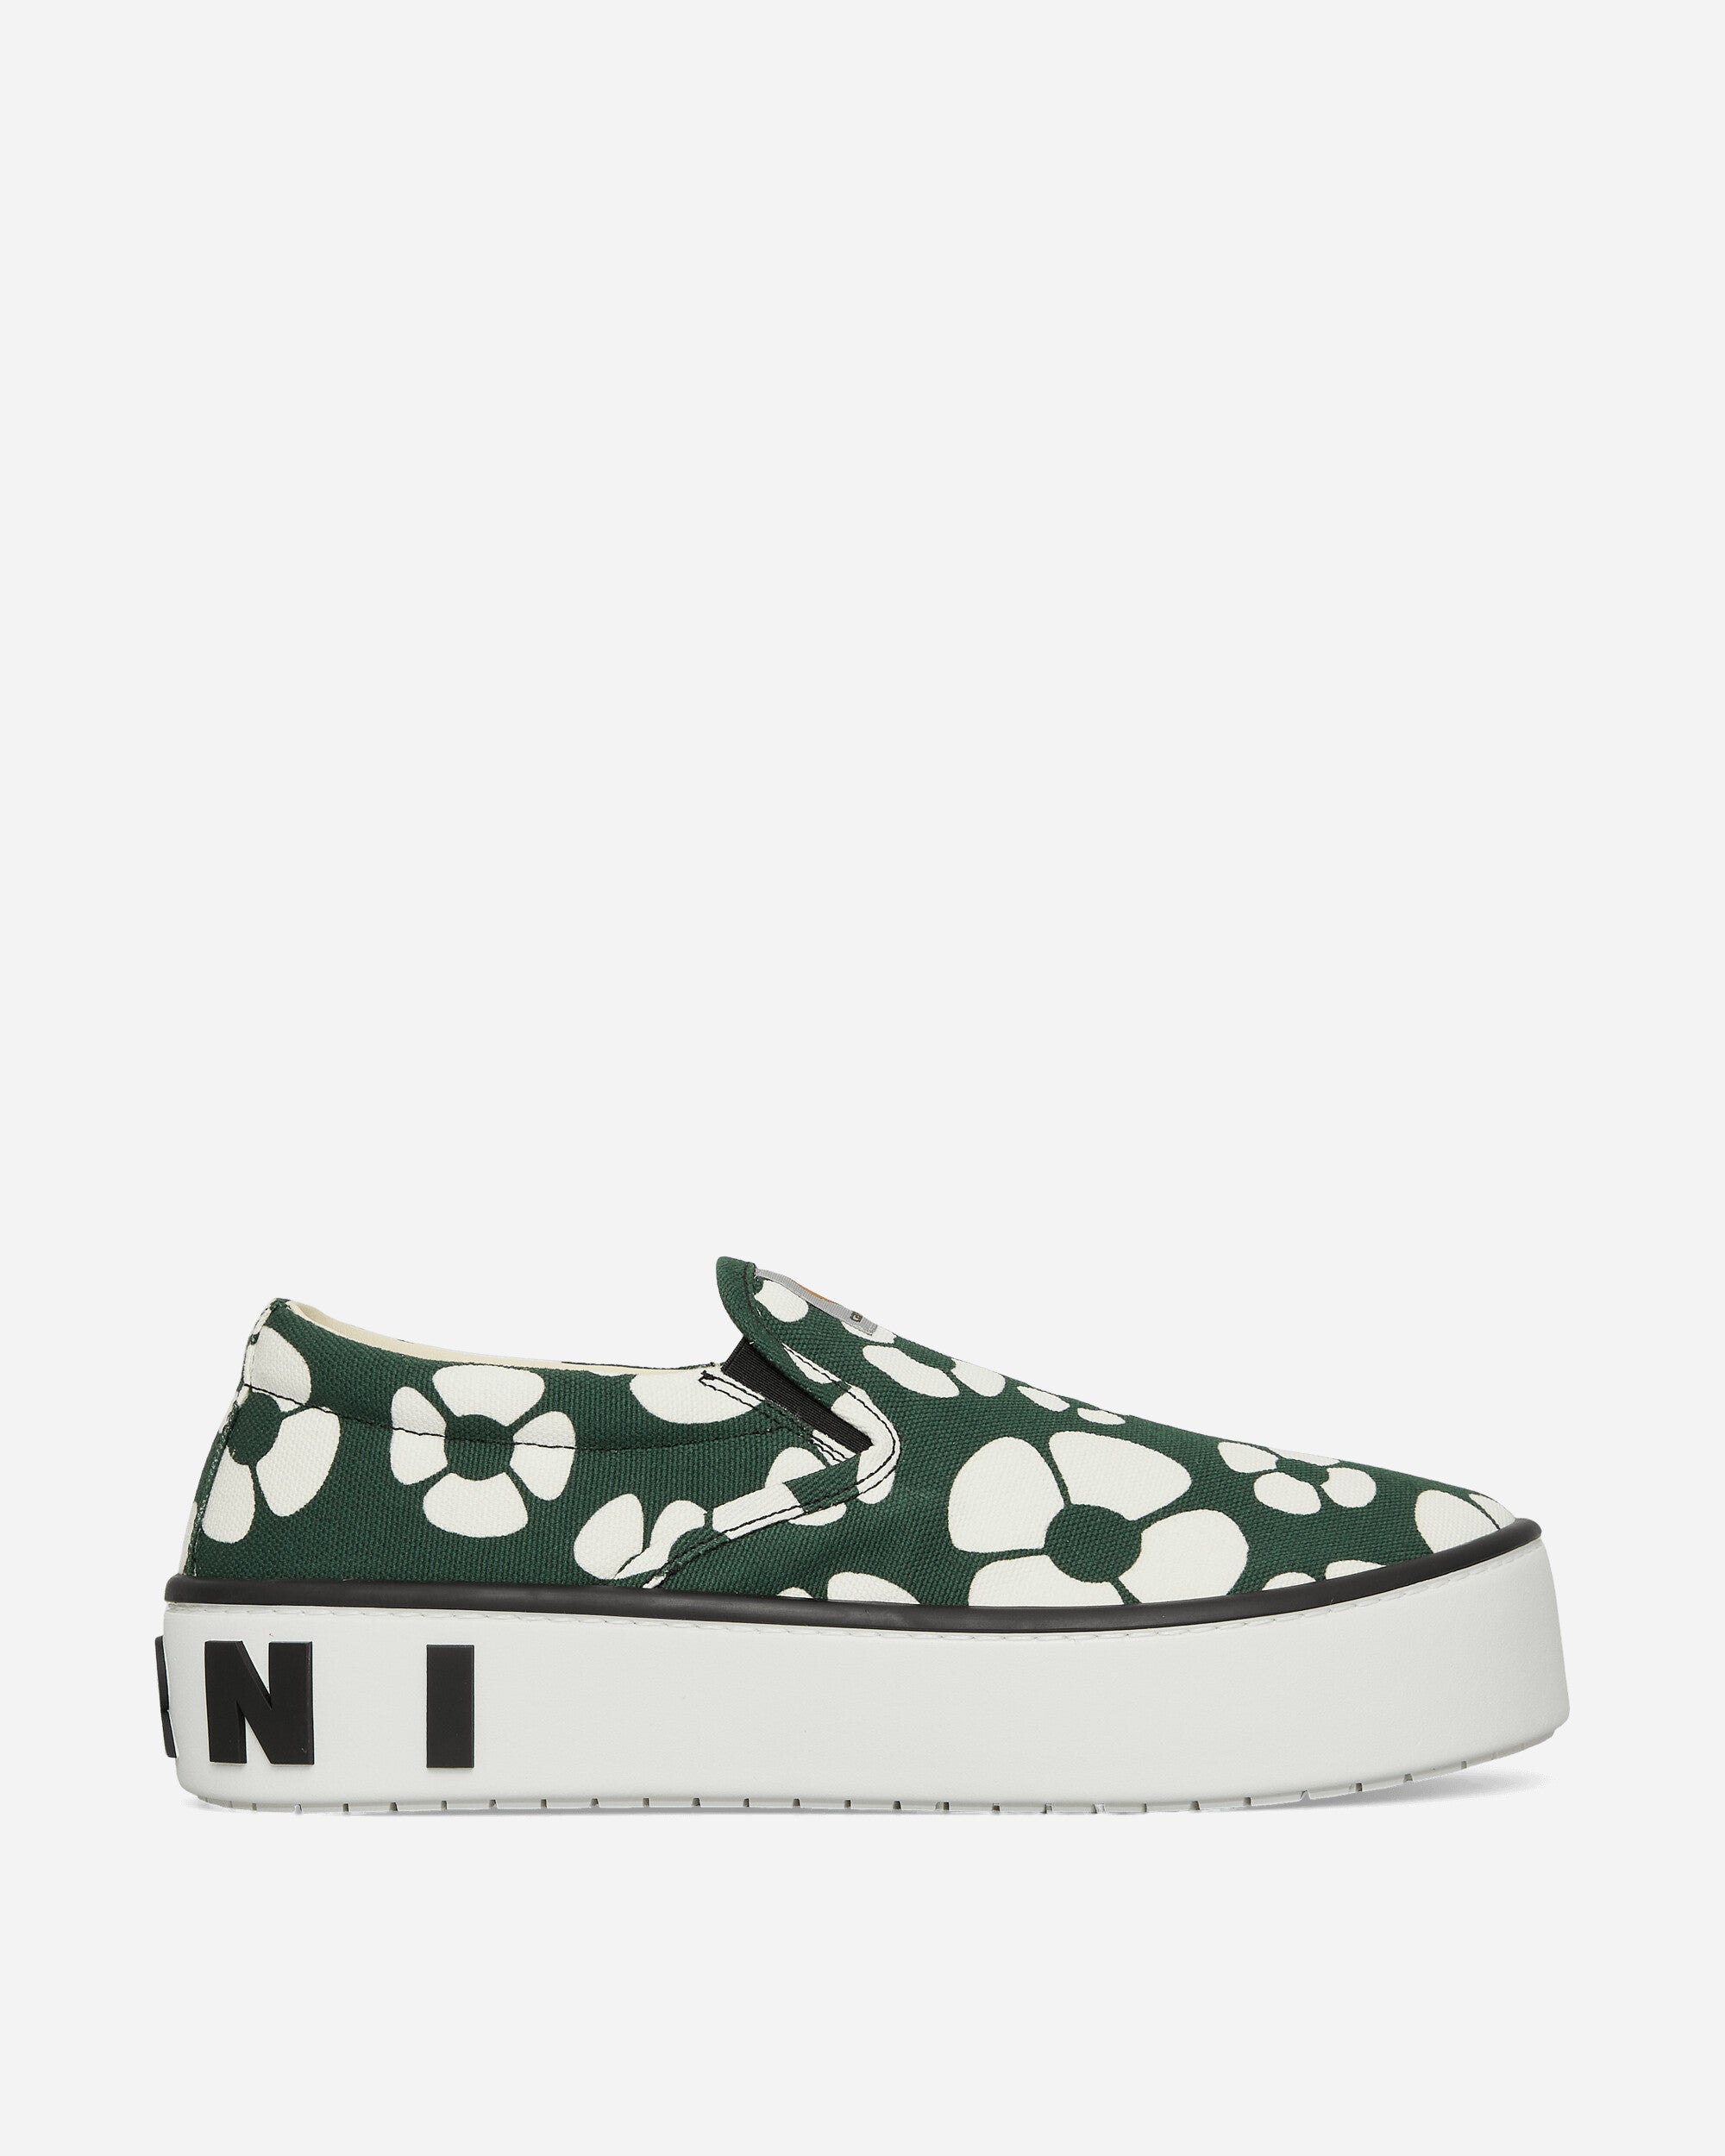 Carhartt WIP Slip On Sneakers Green